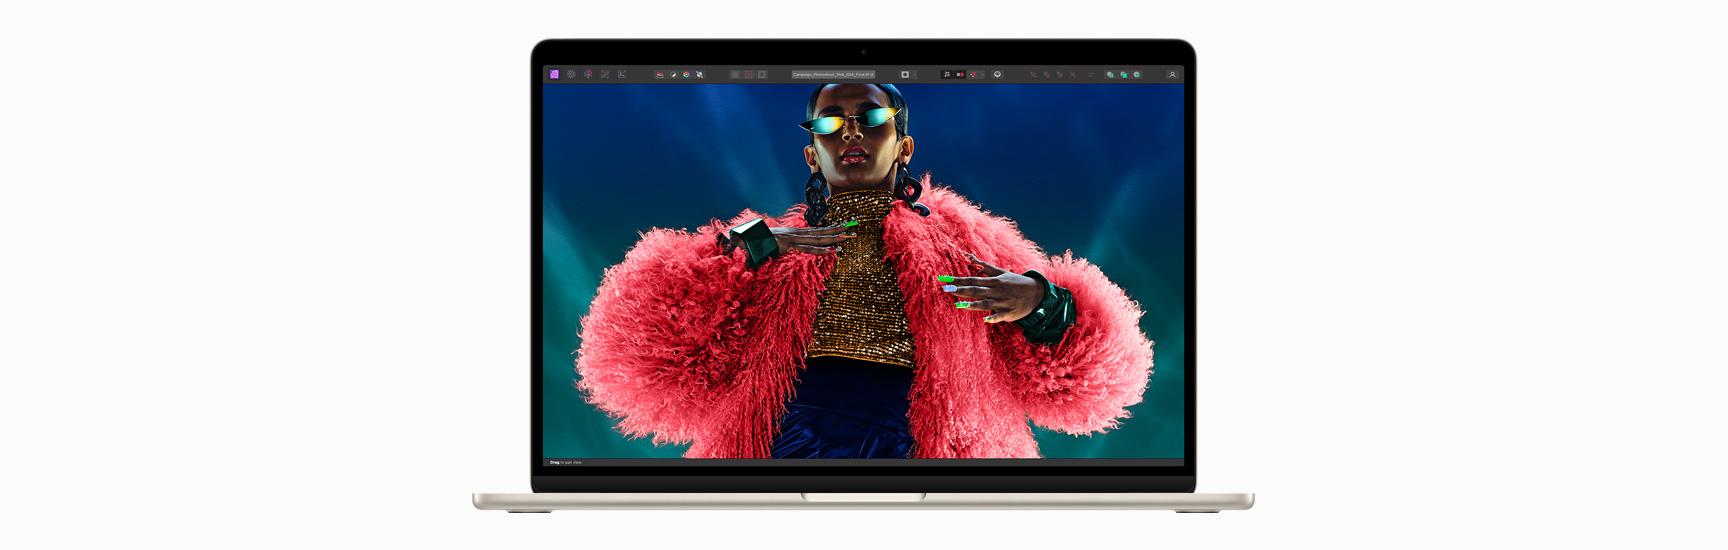 Liquid Retina 디스플레이를 볼 수 있도록 MacBook Air를 정면에서 바라본 모습.